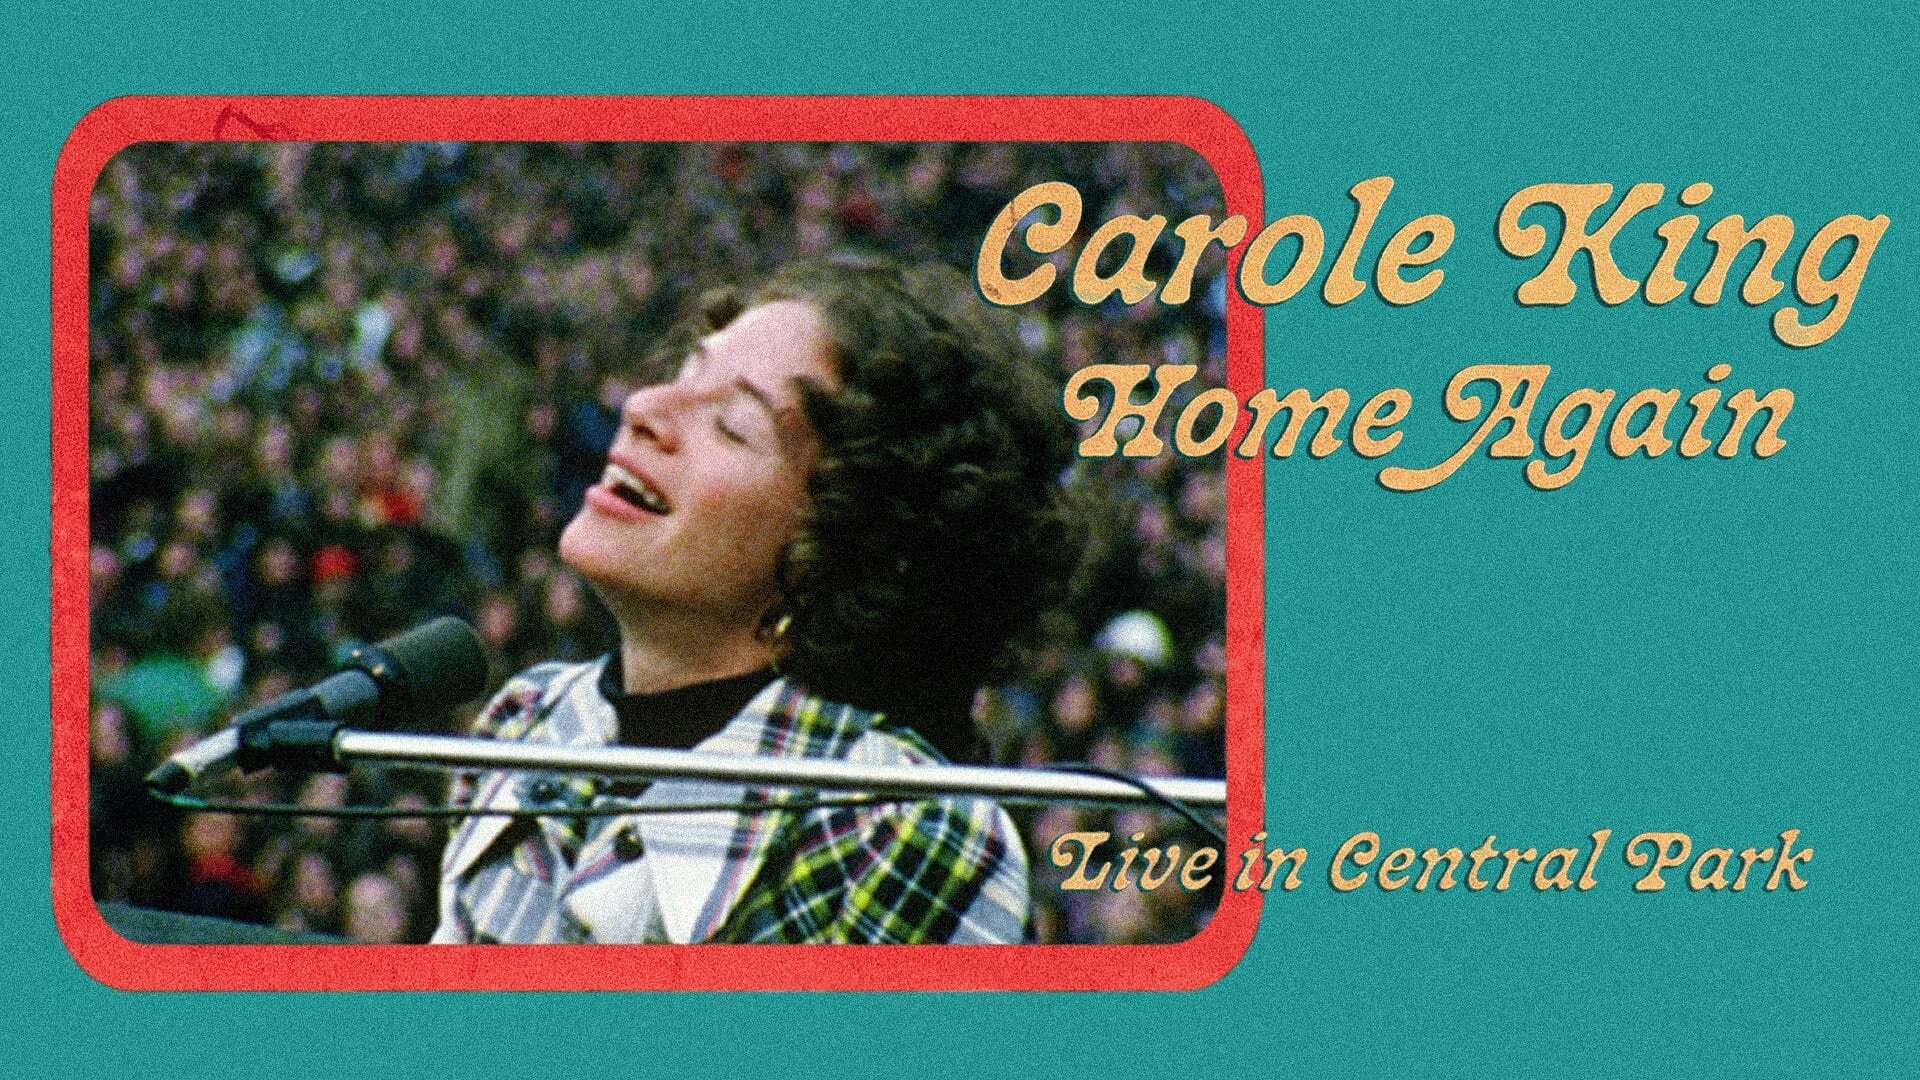 კეროლ კინგი კვლავ შინაა:  ლაივ კონცერტი ცენტრალურ პარკში / Carole King Home Again: Live in Central Park